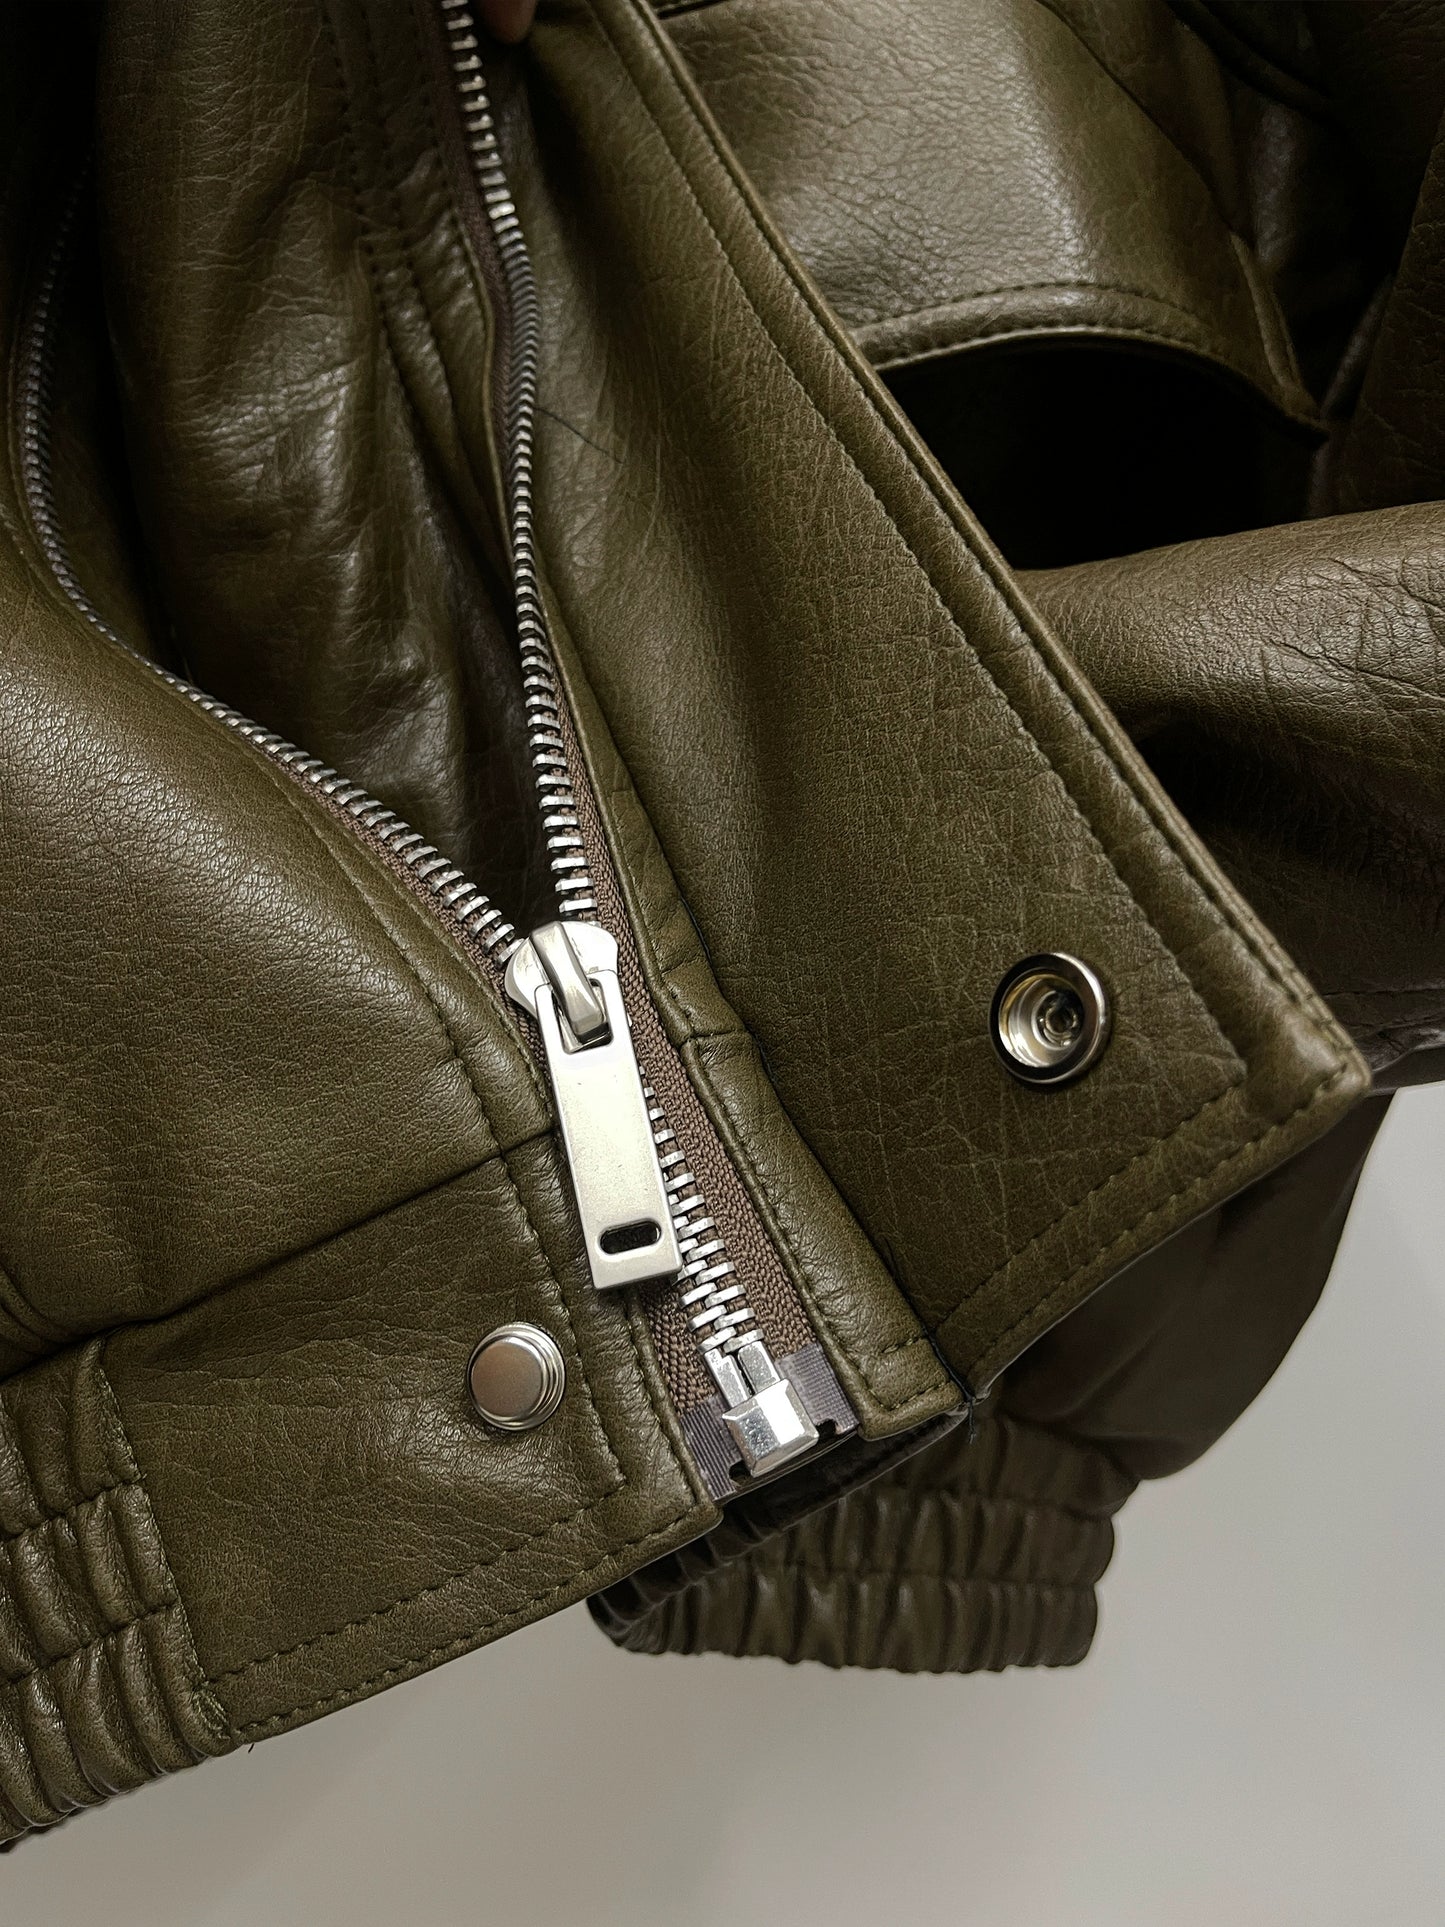 GIBBYCNA Winter Leather Jacket Men's Fashion Brand Retro Loose Cotton Jacket Thickened Warm Pu Leather Jacket